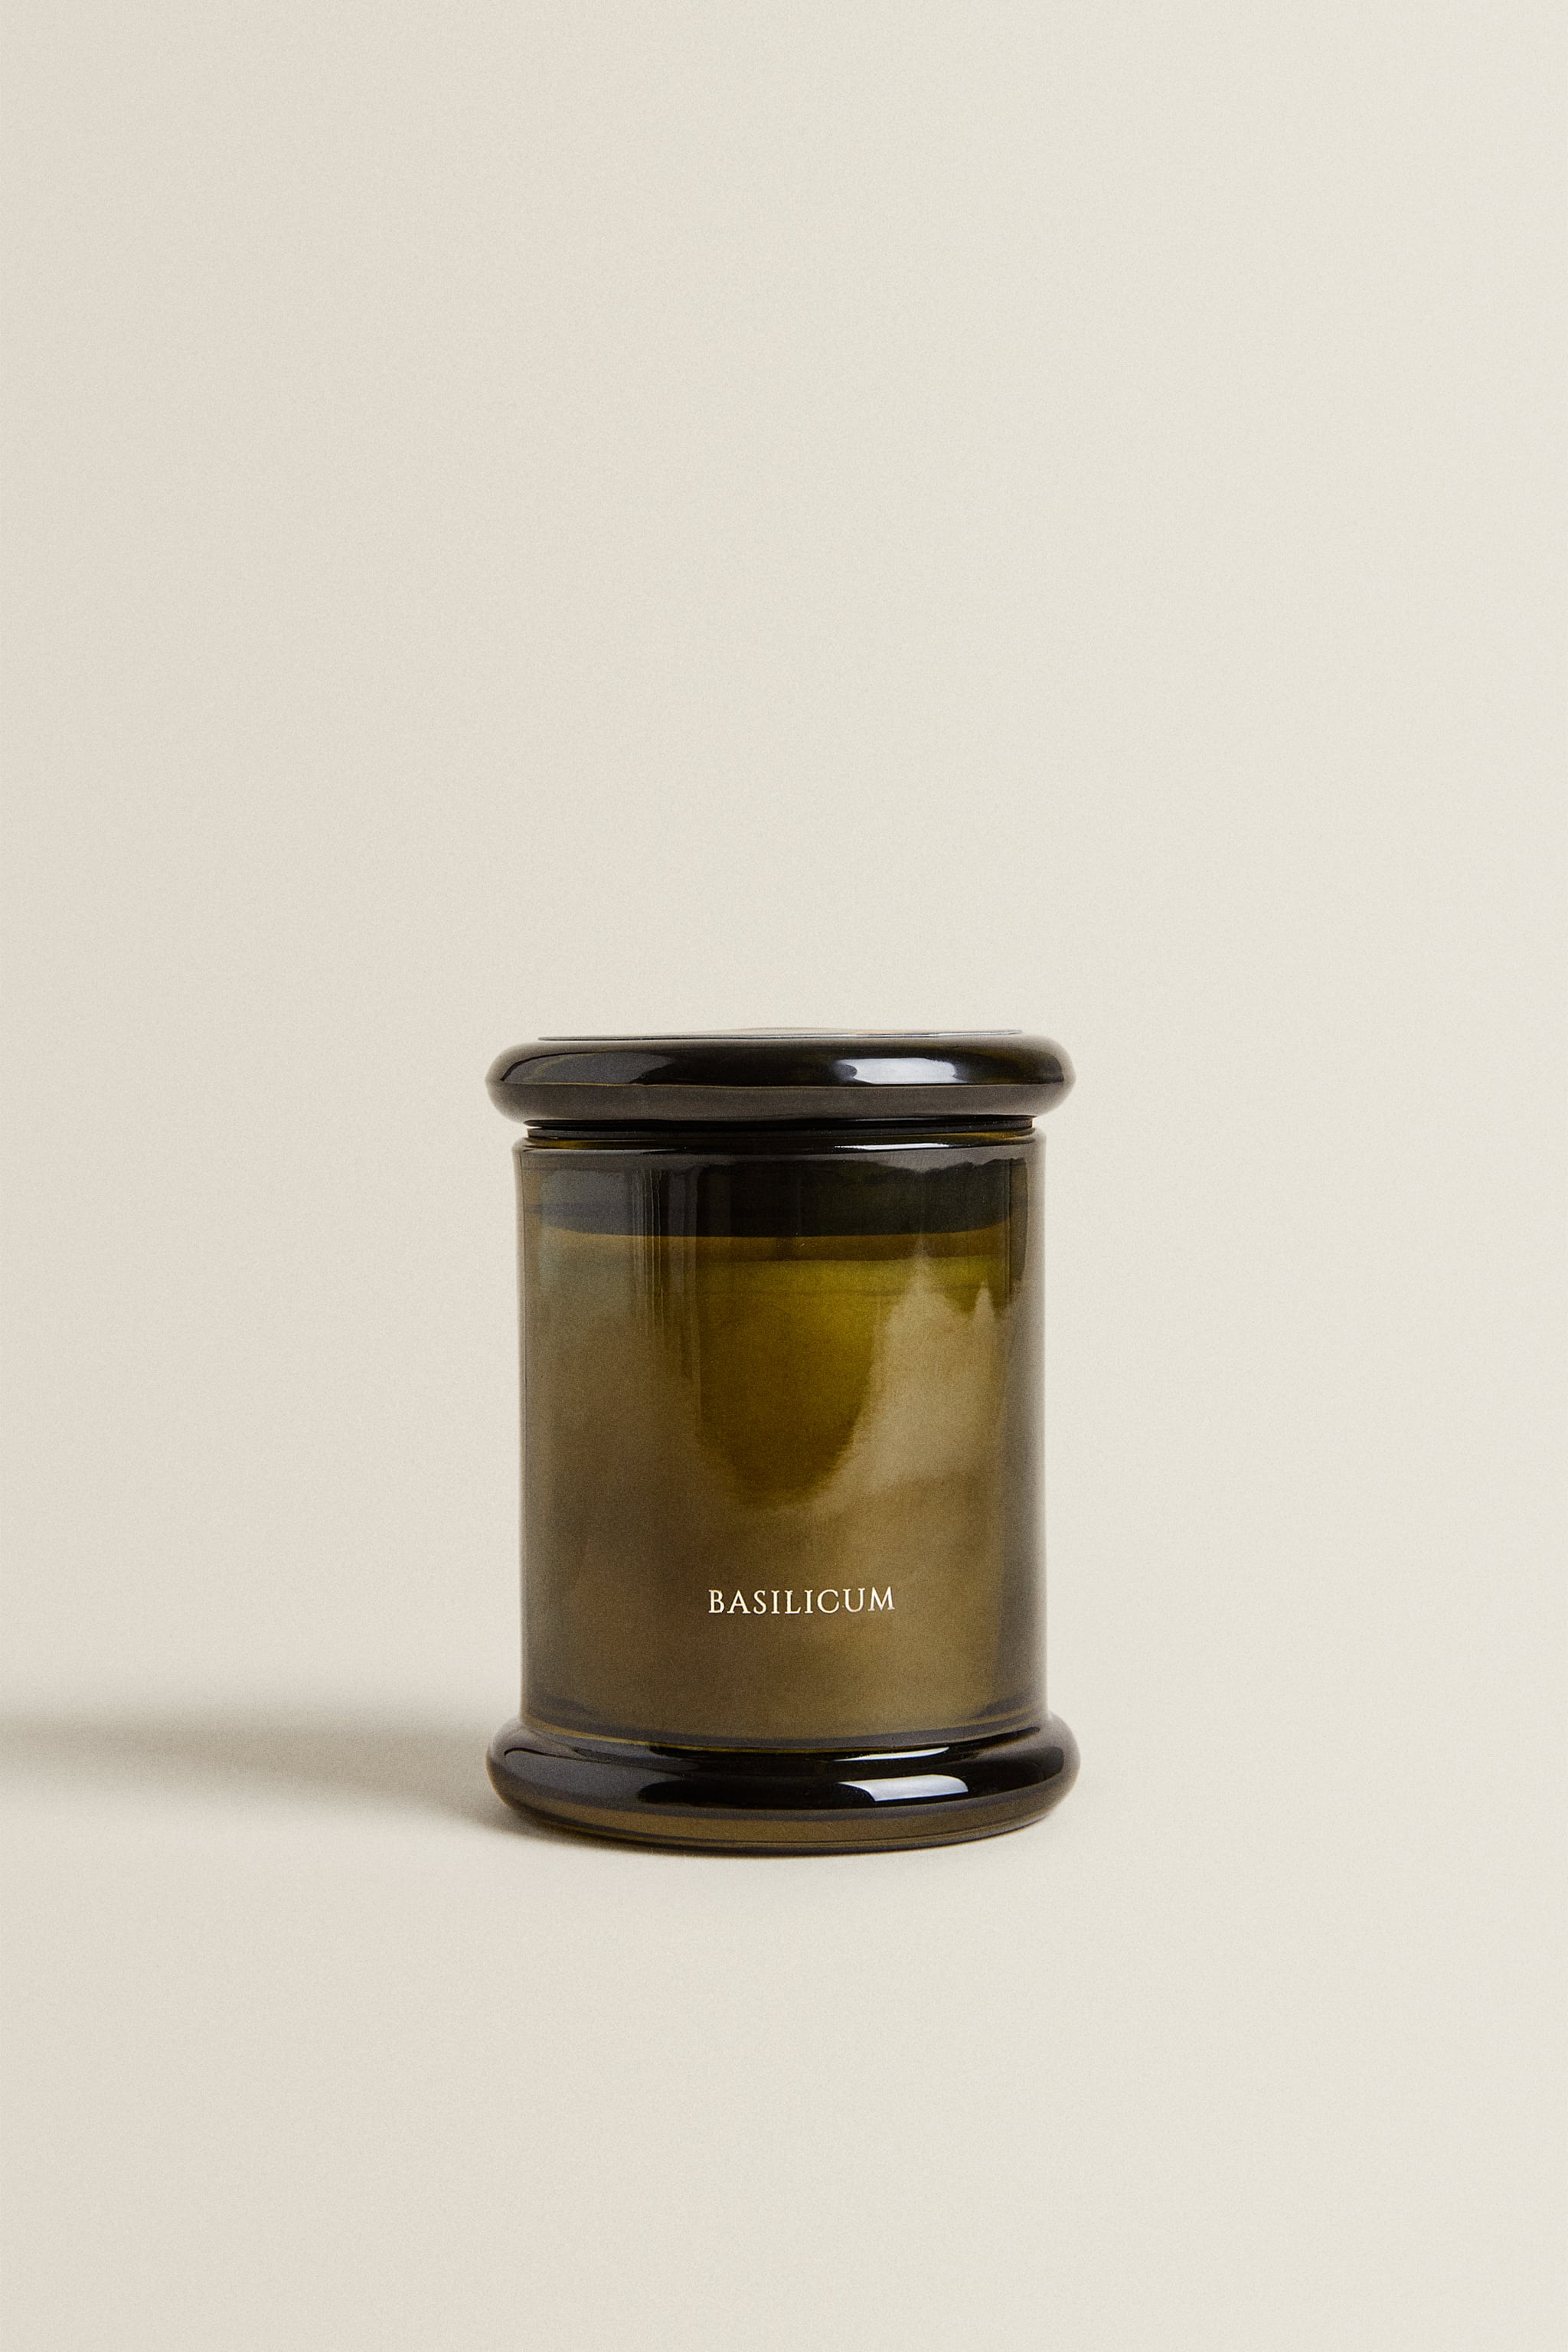 (150 г) ароматическая свеча базиликум Zara, монетный двор фото